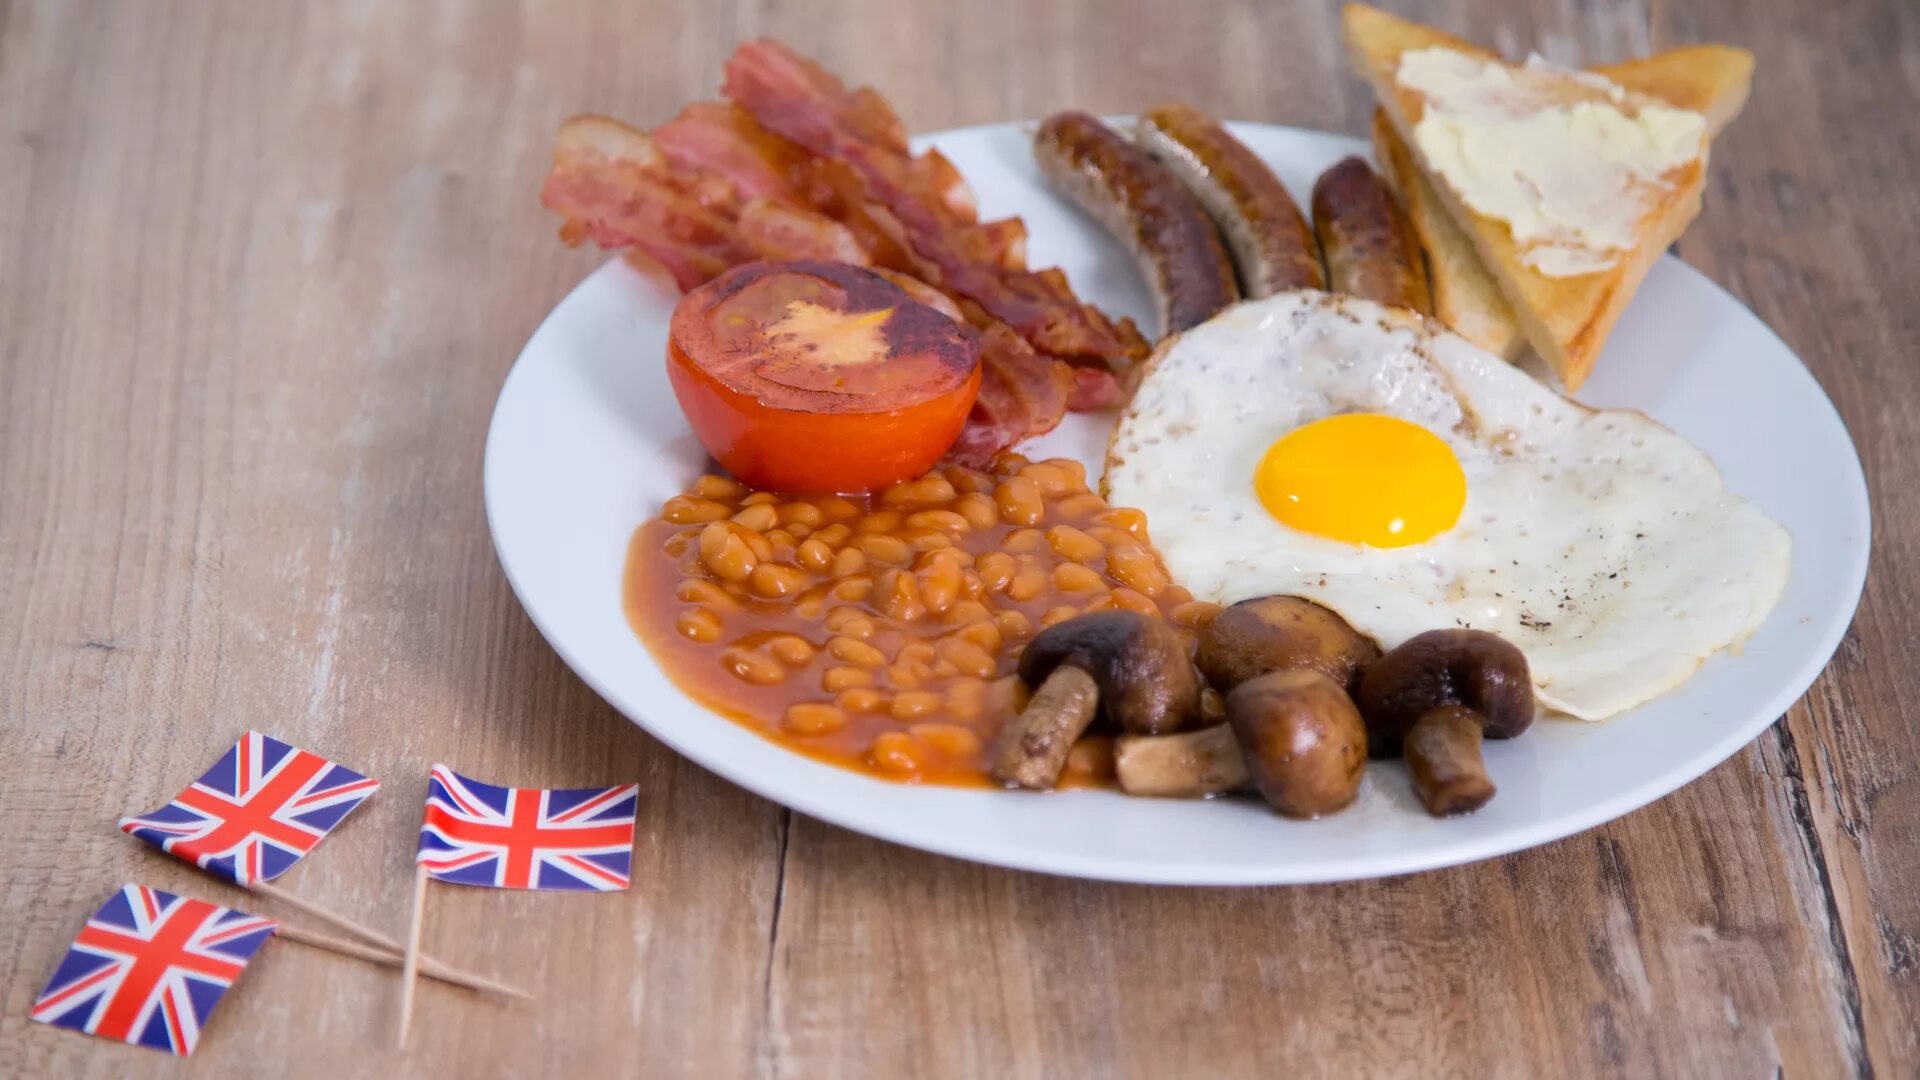 Инглиш брекфаст. Английский завтрак Британия. Завтрак великобританцев. Завтрак Эдвардианская эпоха Англия. Бритиш Брекфаст.